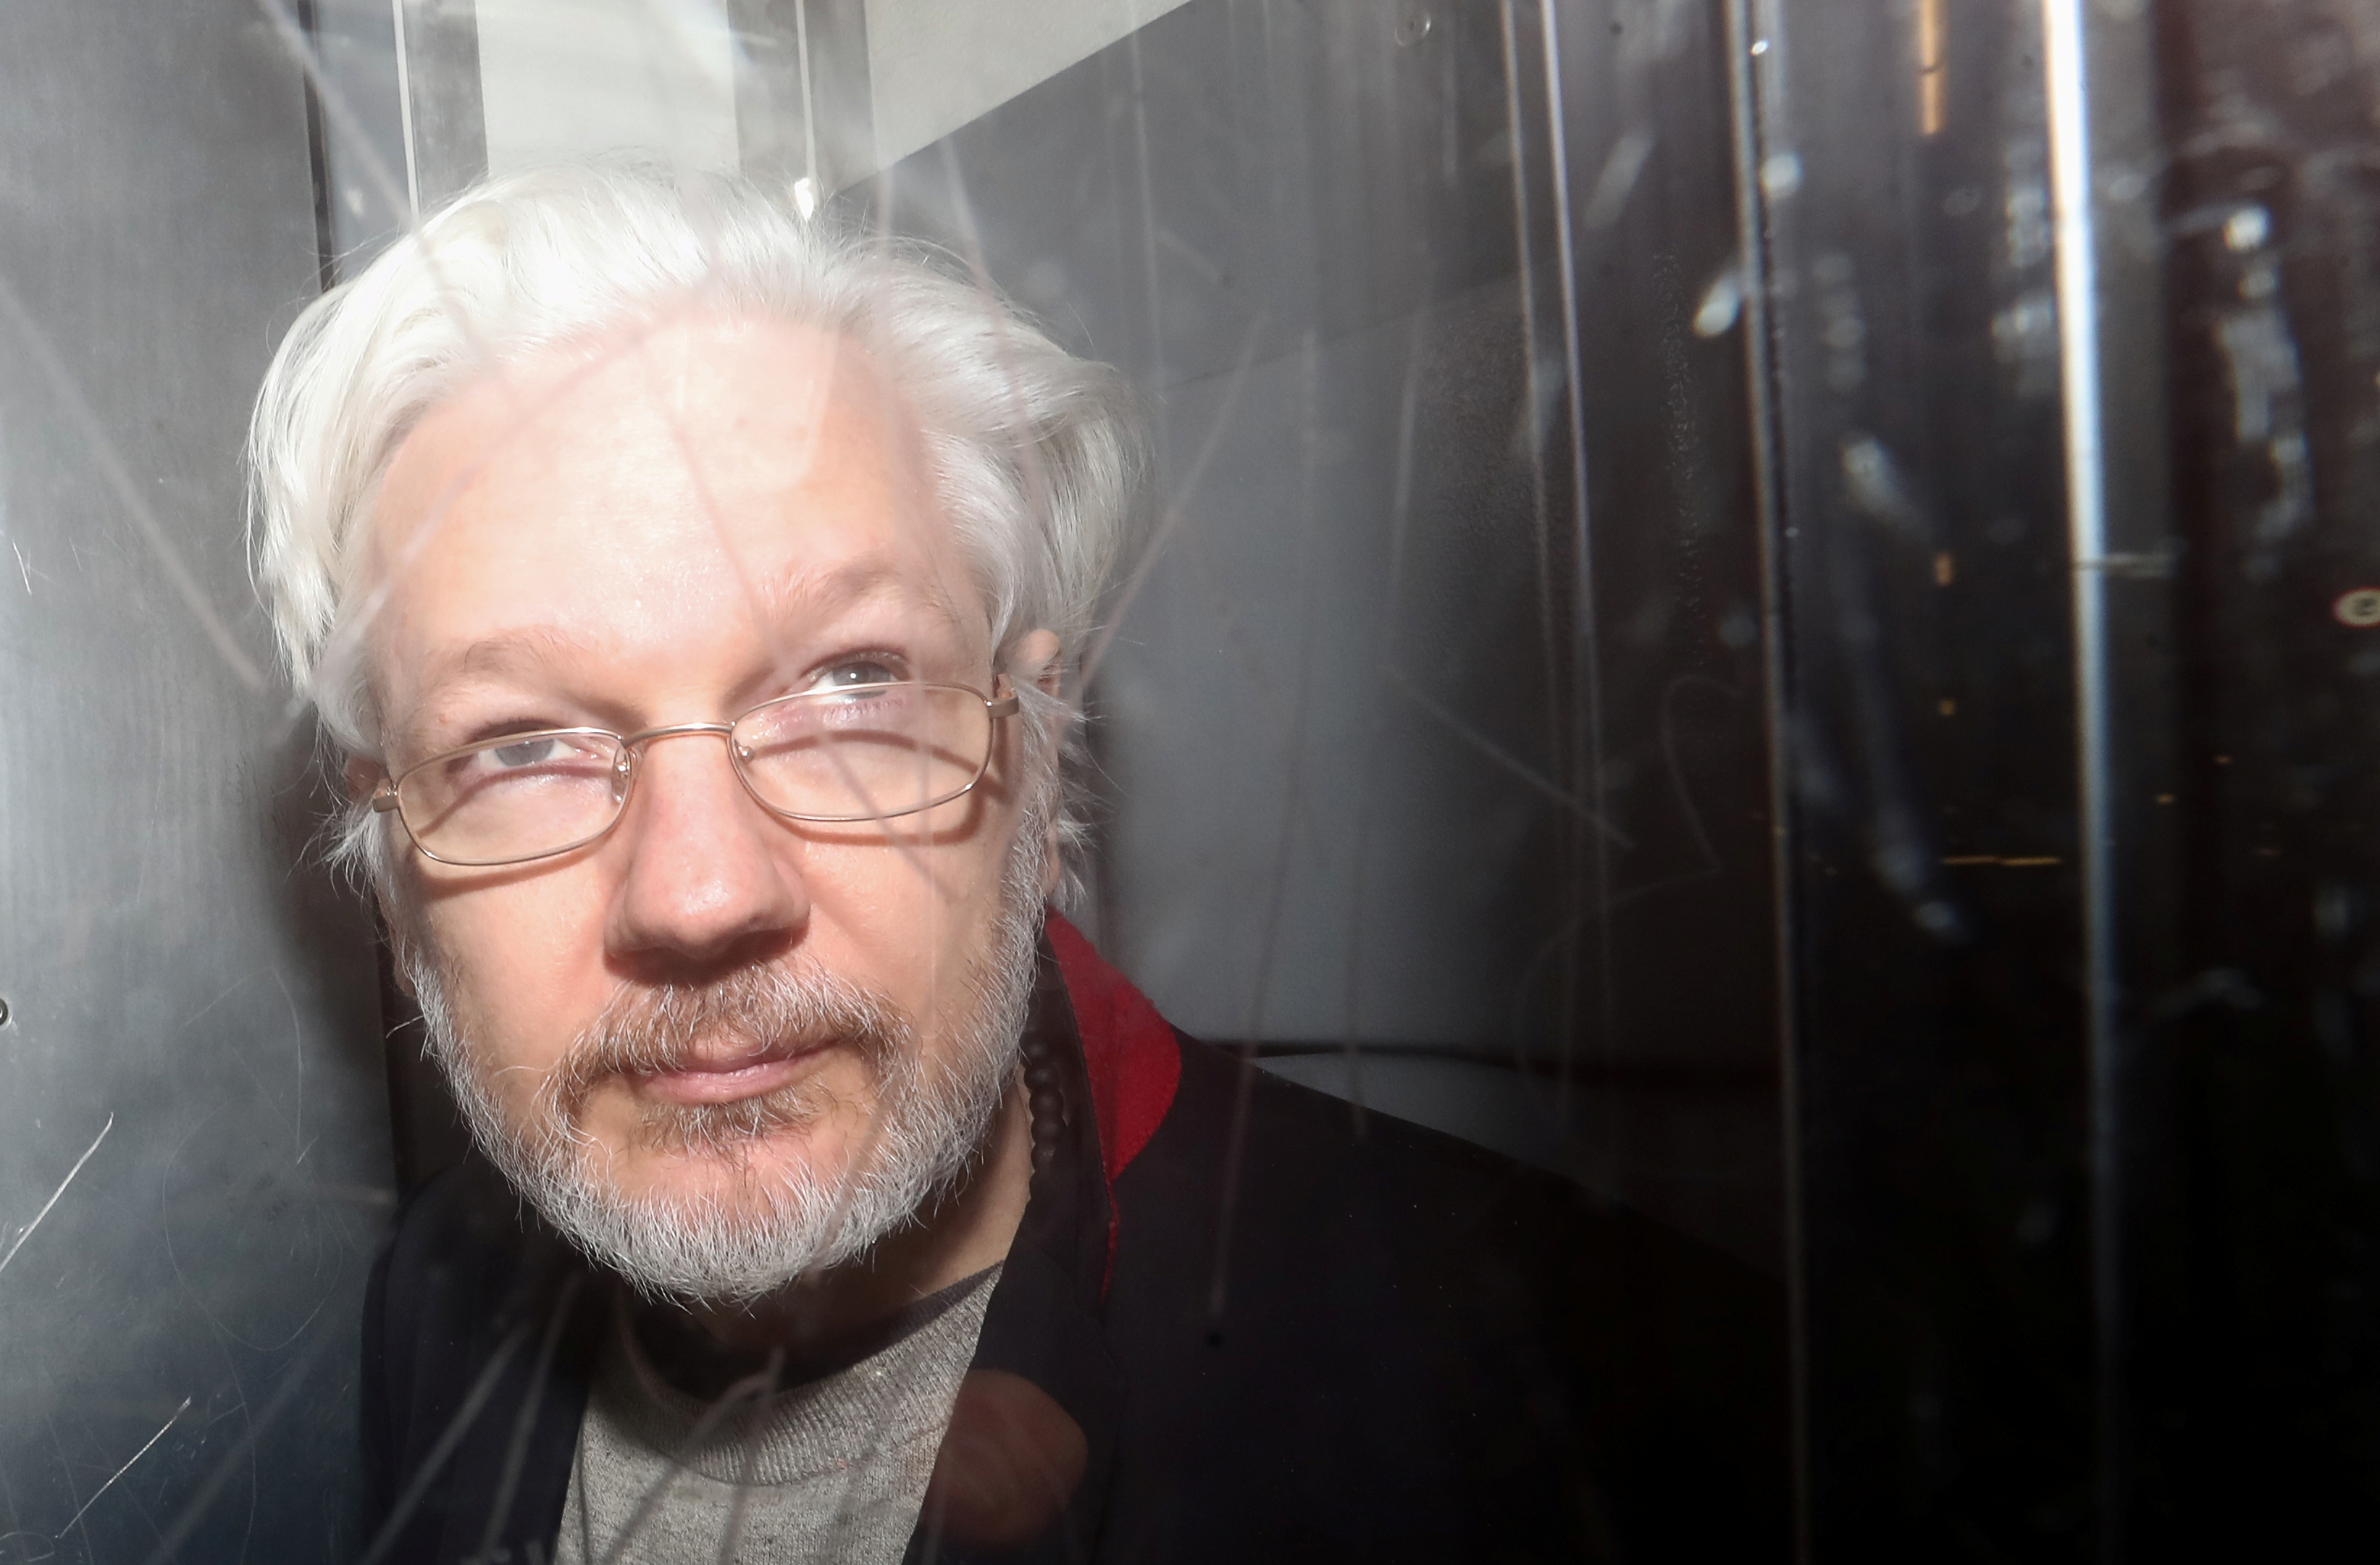 EEUU considera que hay necesidad de evaluar la salud mental de Assange